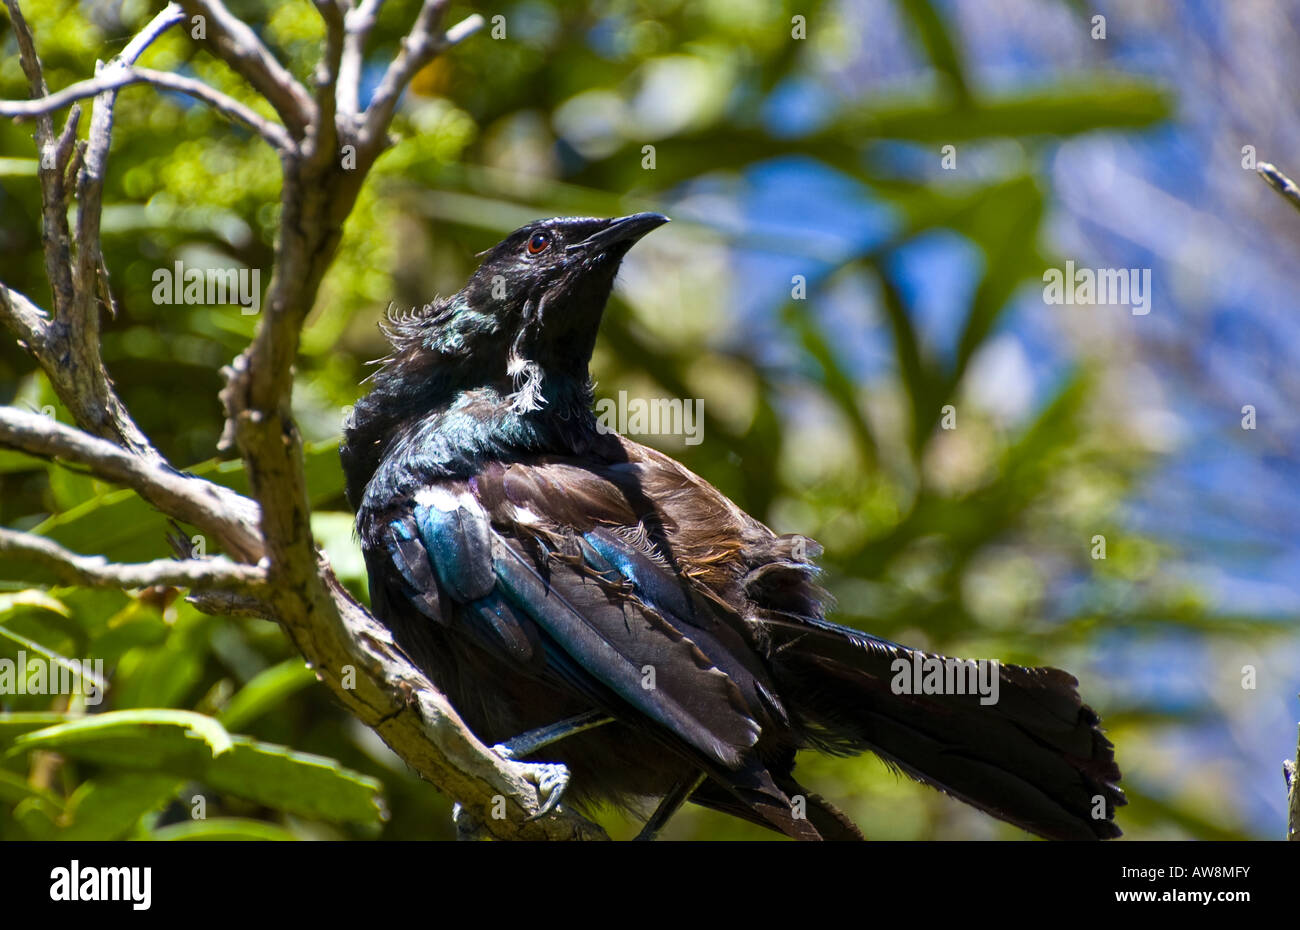 Un tui (Nouvelle-Zélande) d'oiseaux indigènes, perché sur une branche en plein soleil. Banque D'Images